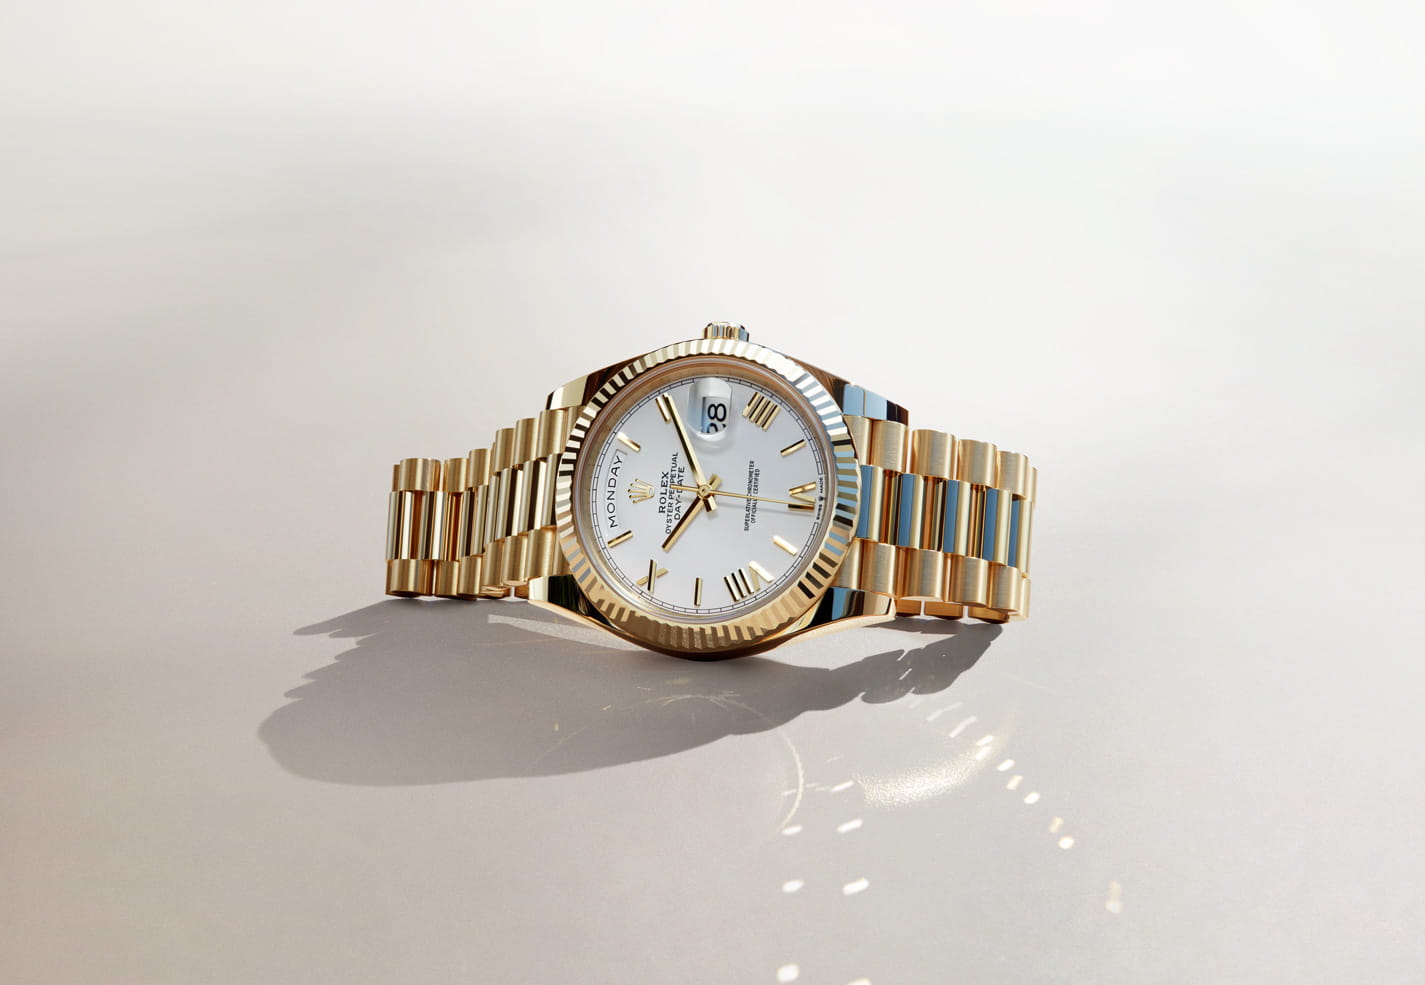 1956年に発表されたデイデイトは非常に革新的な時計だった。日付に加えて12時位置の弧状の小窓にフルスペルの<wbr>曜日を表示した初のカレンダー腕時計で、当時この技術は画期的だった。